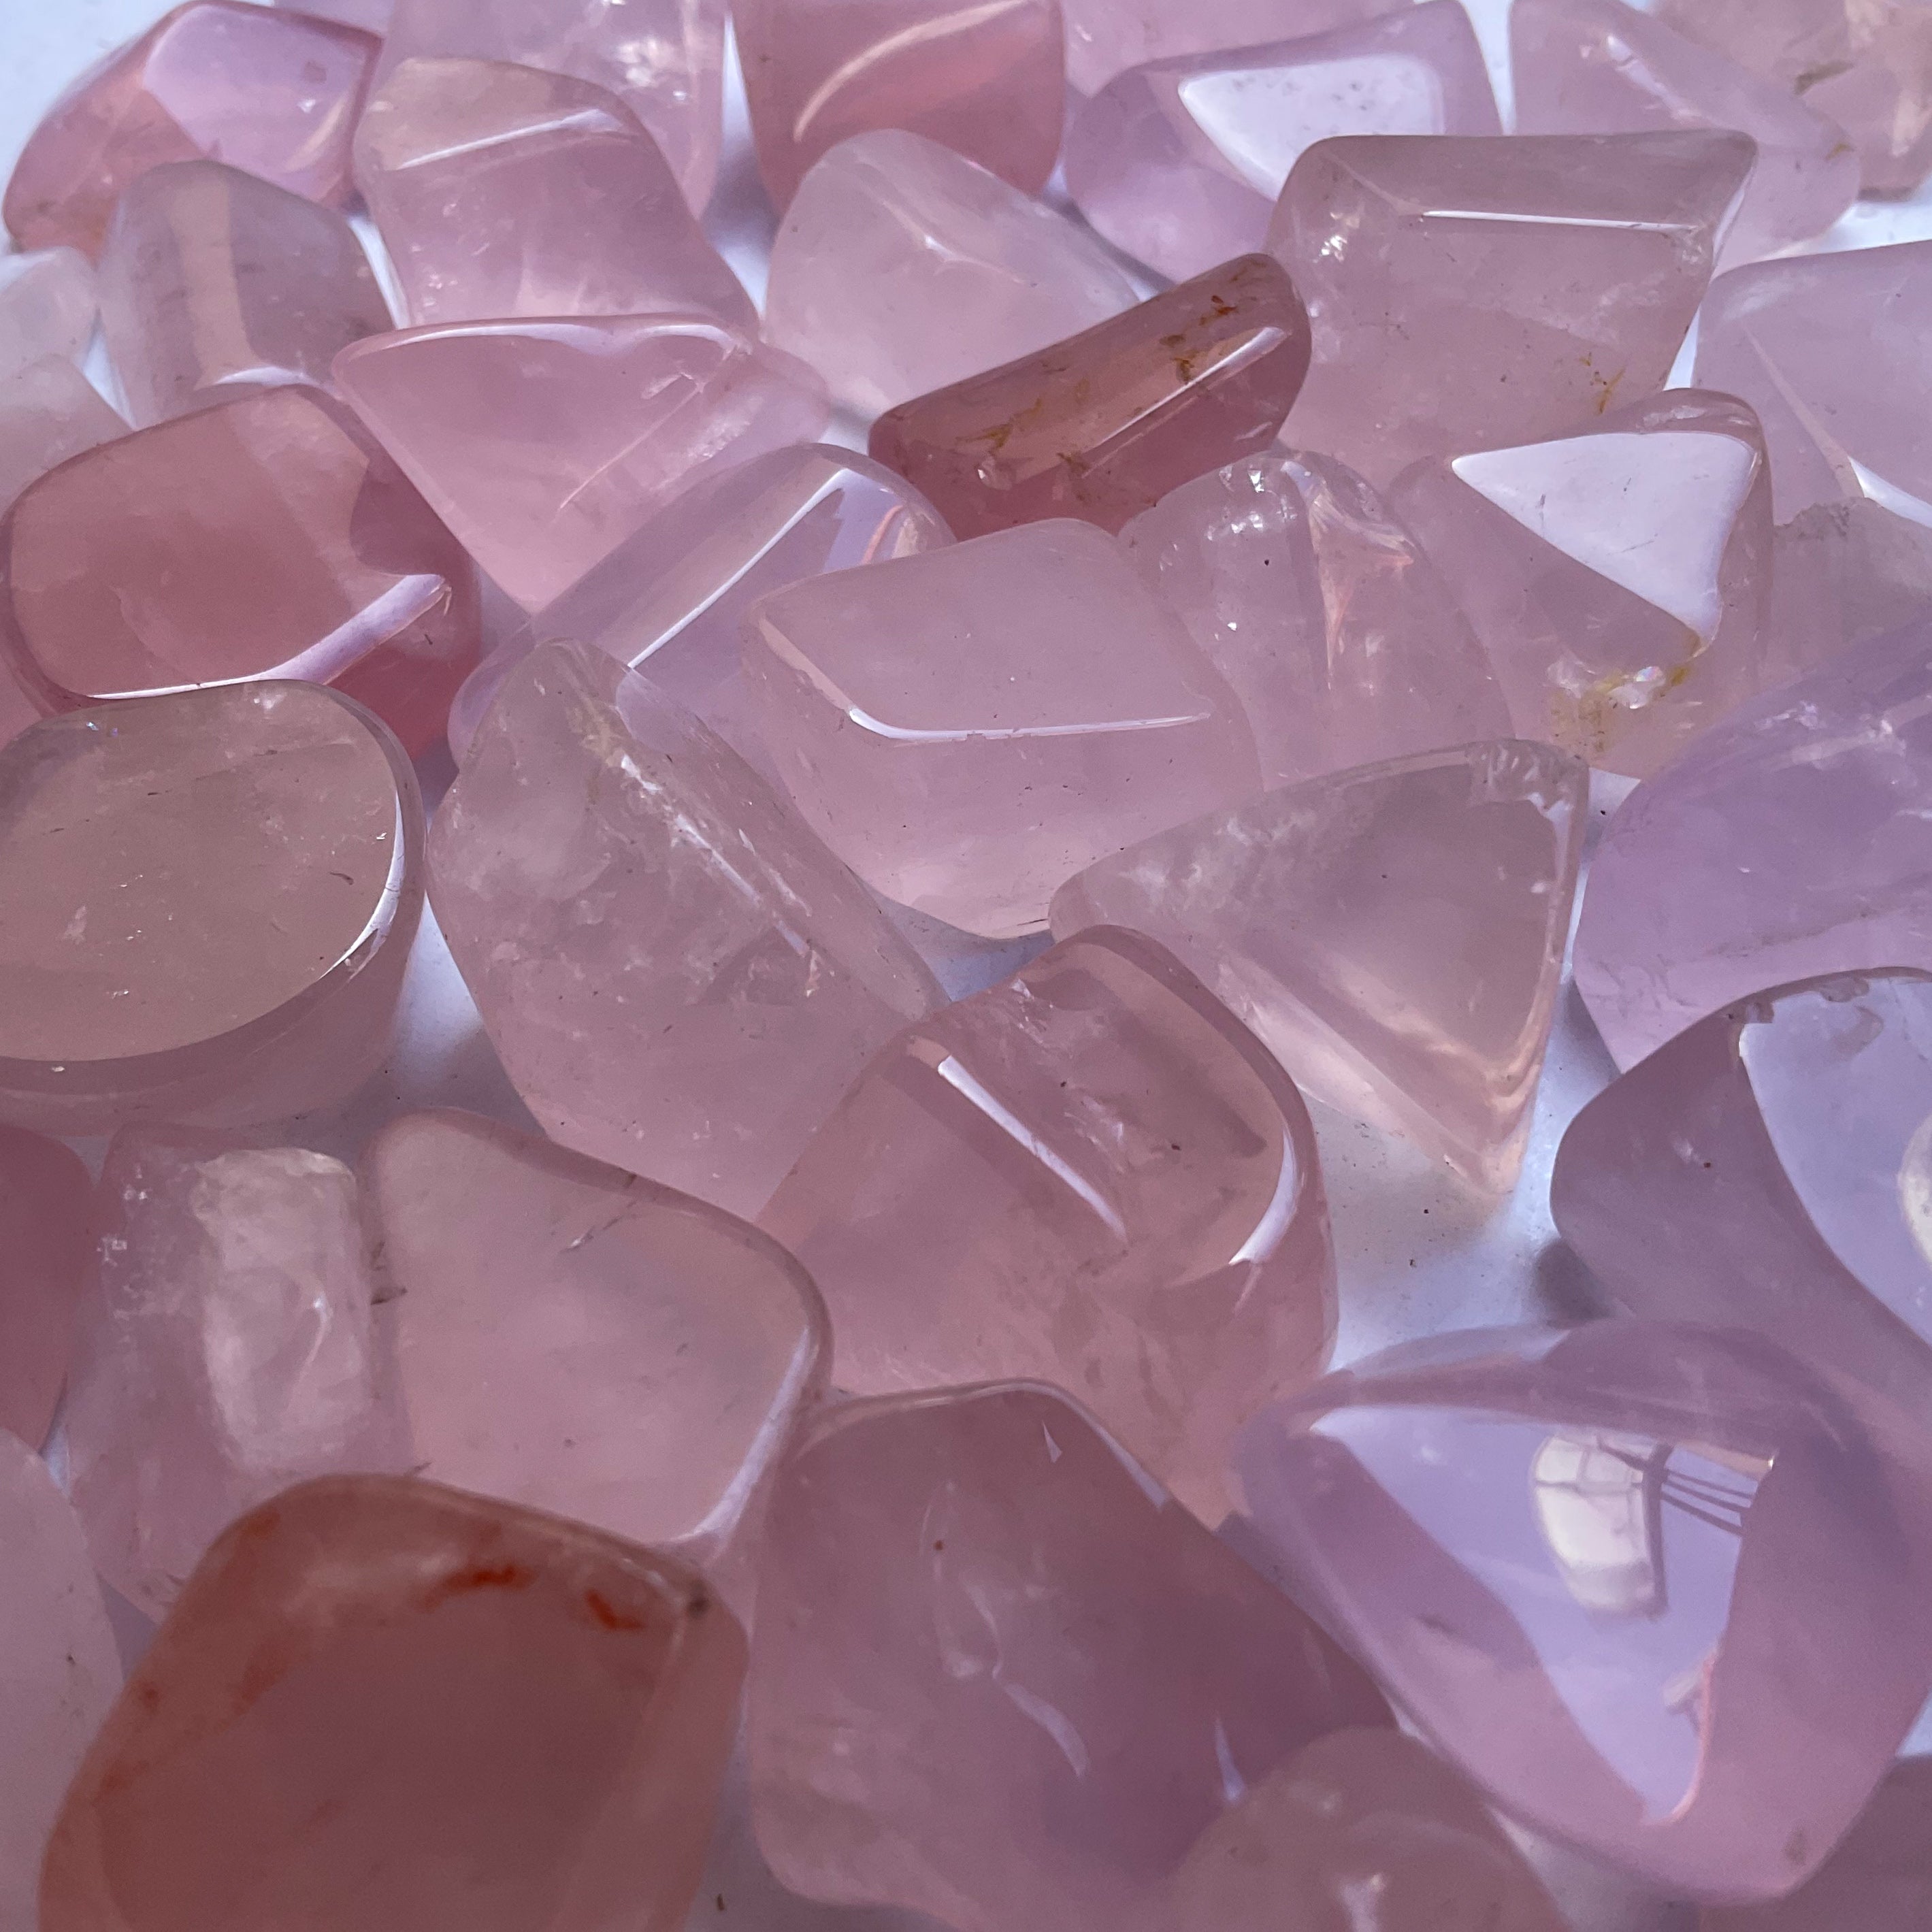 Wholesale tumbled stones bulk lot in rose quartz